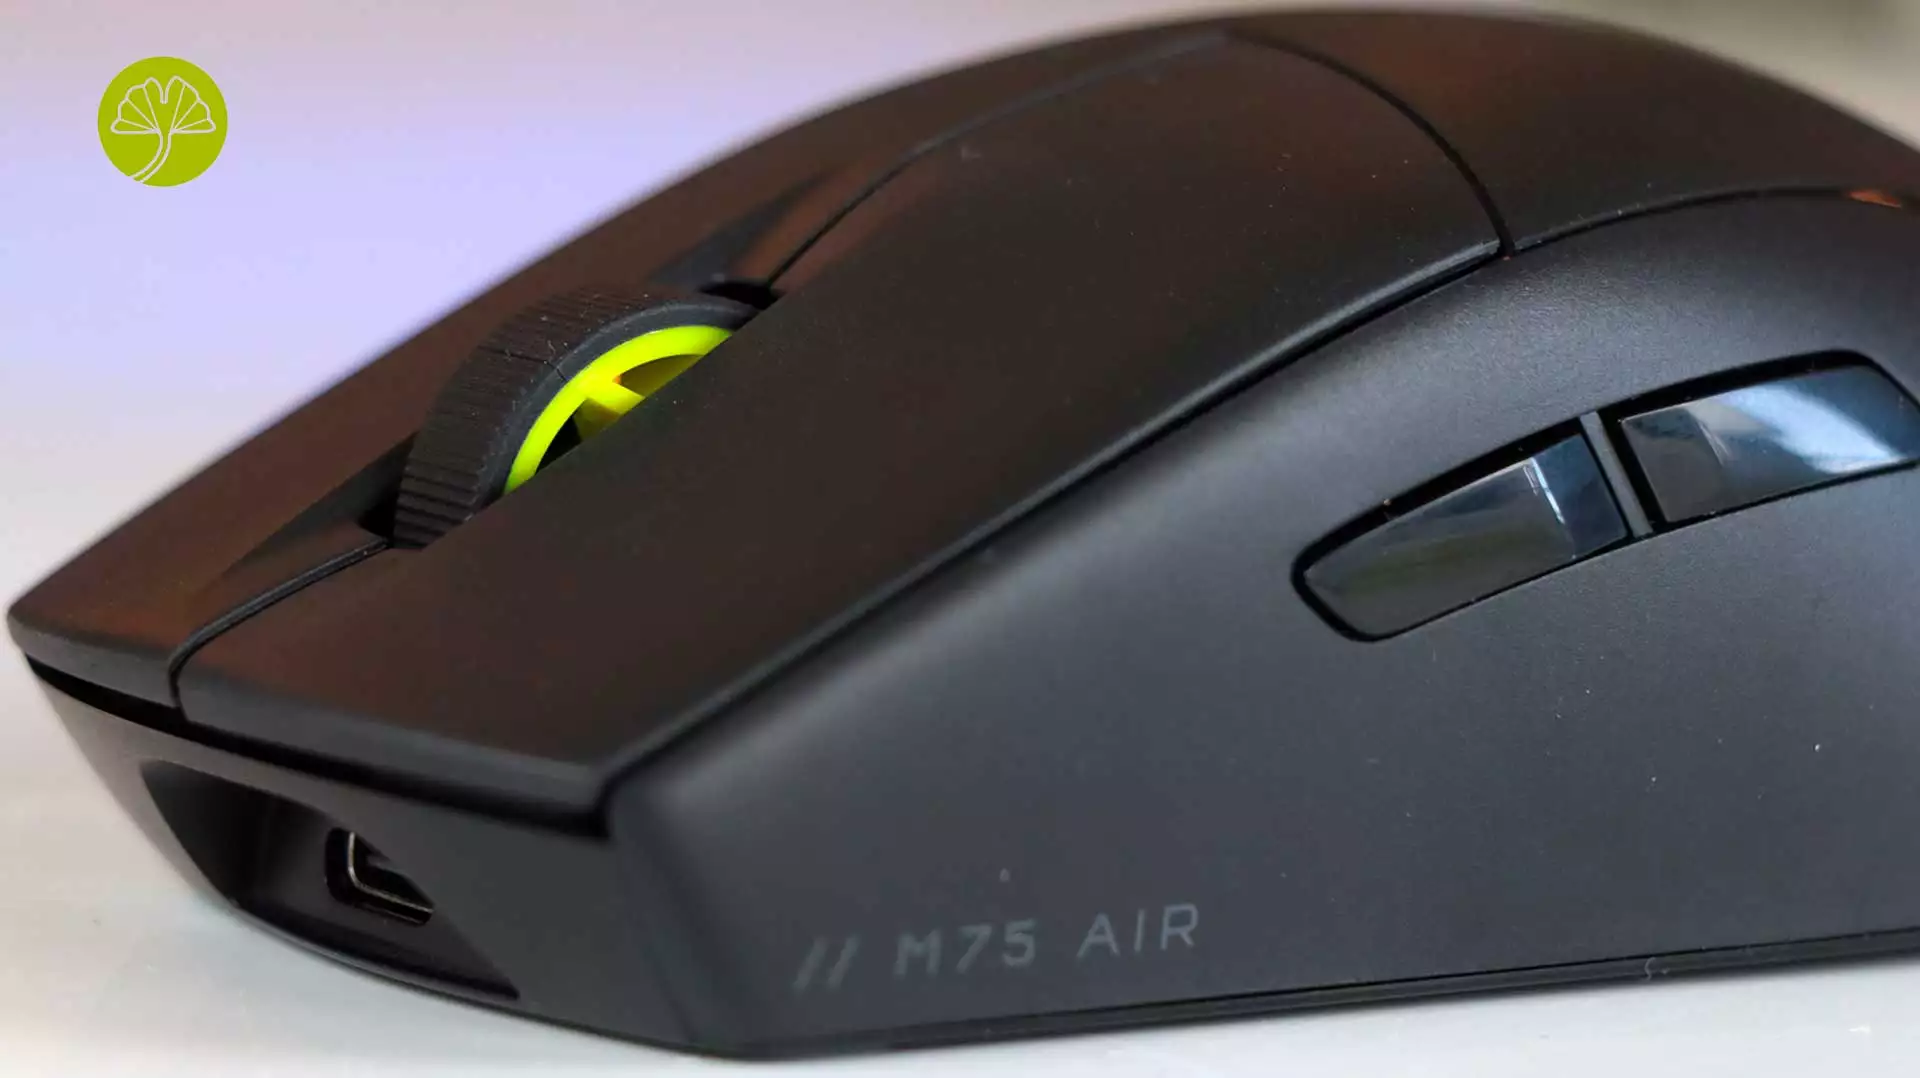 Corsair lance sa souris pour jeux FPS, la M75 Air Wireless